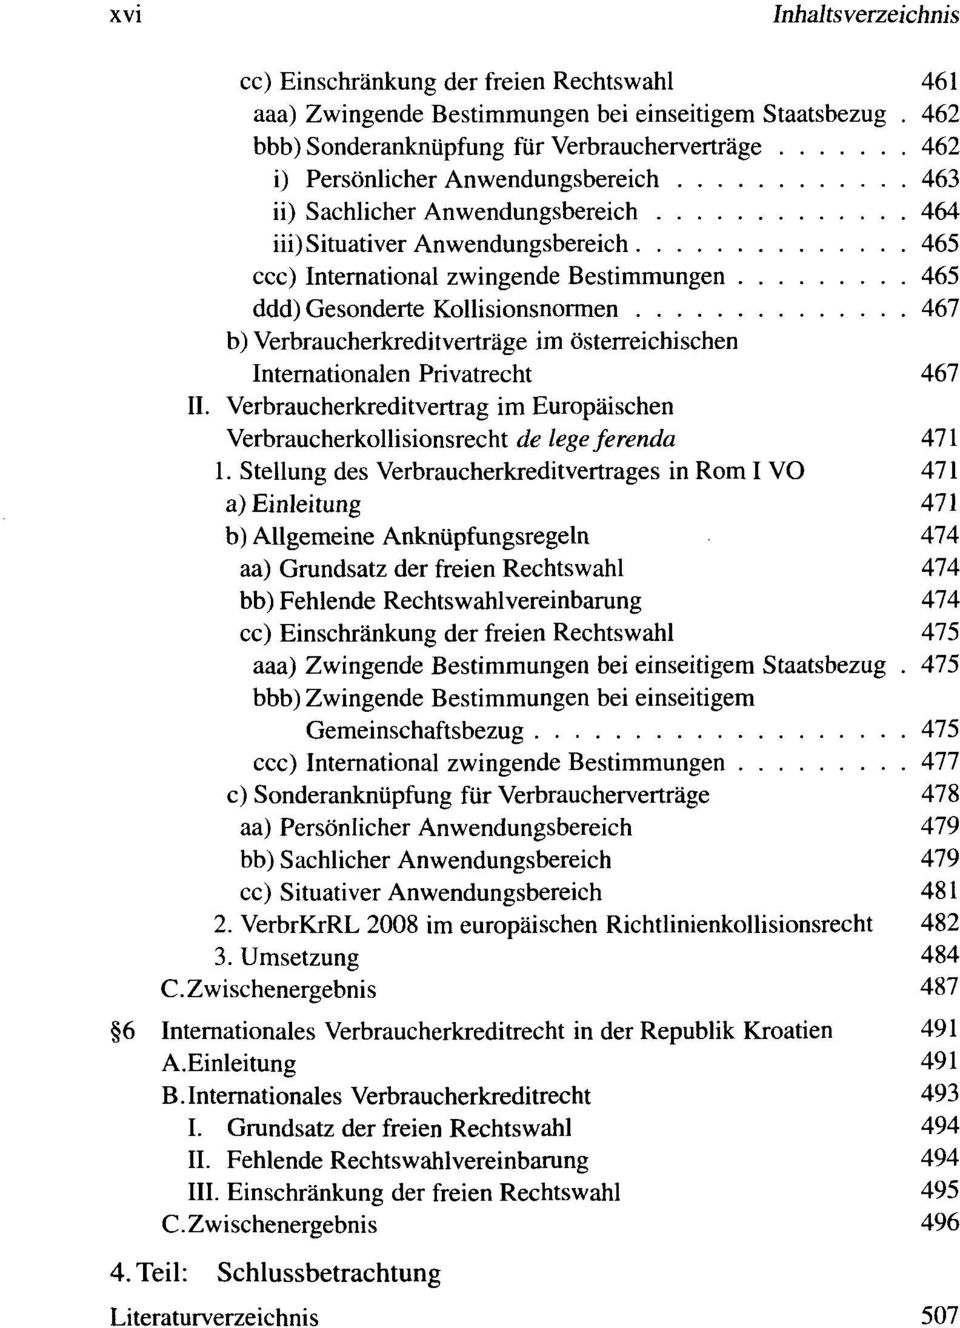 Bestimmungen 465 ddd) Gesonderte Kollisionsnormen 467 b) Verbraucherkreditvertrage im osterreichischen Internationalen Privatrecht 467 II.